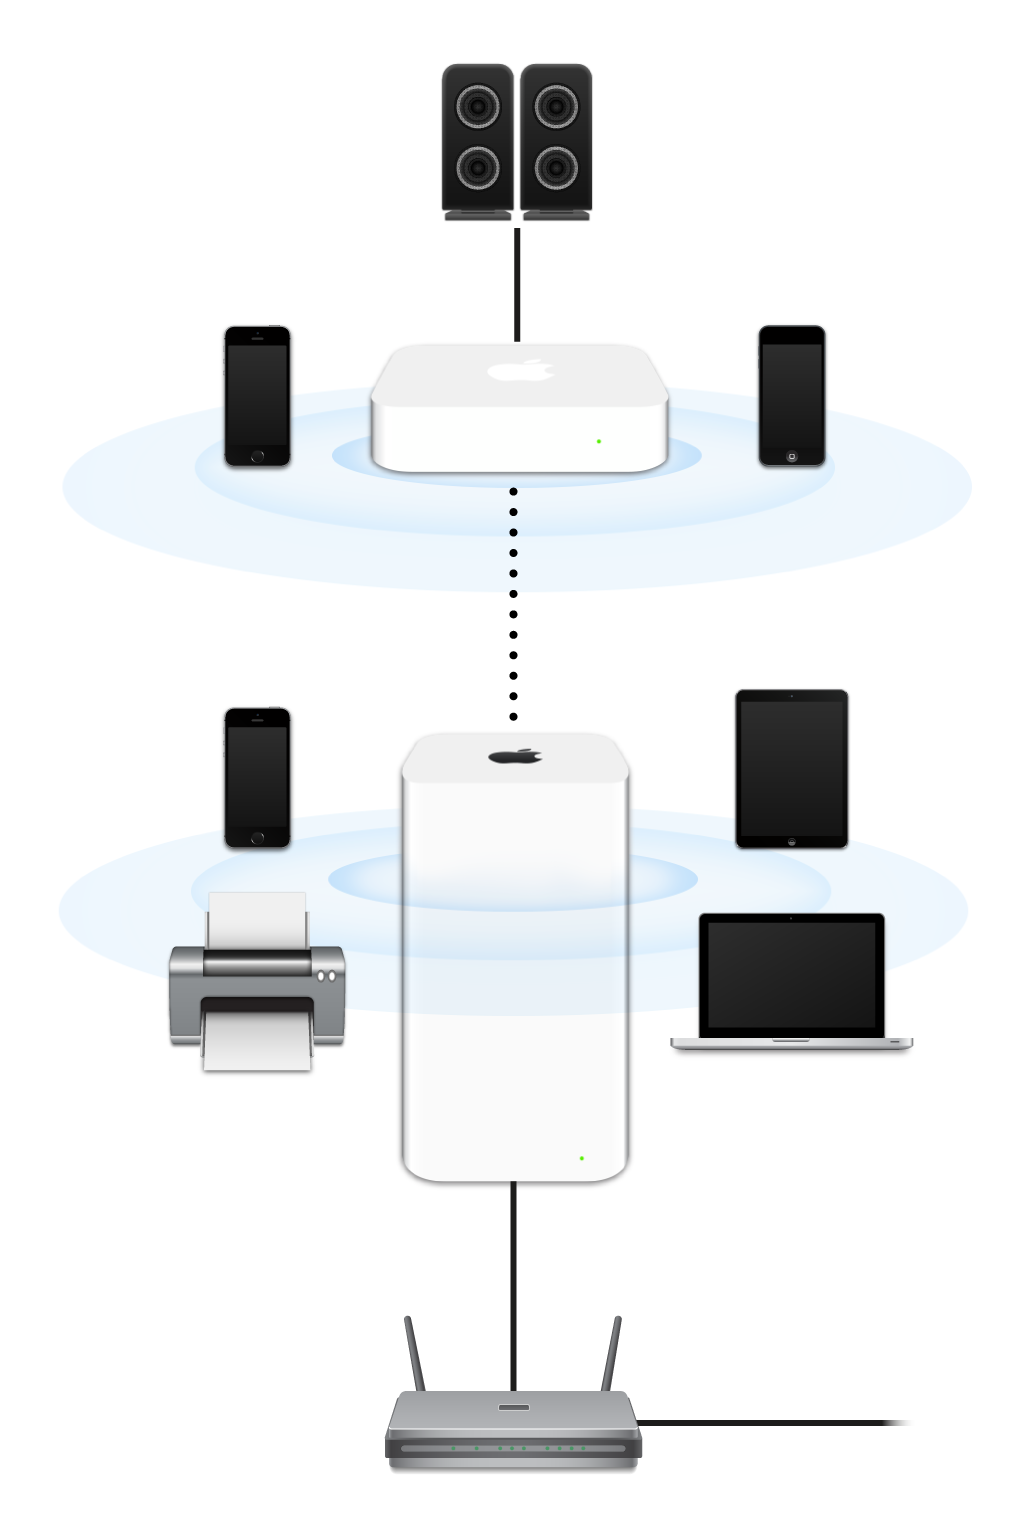 Bir modeme bağlı olan ve çeşitli aygıtlara aktarım yapan AirPort Extreme ve AirPort Express içeren genişletilmiş ağ.